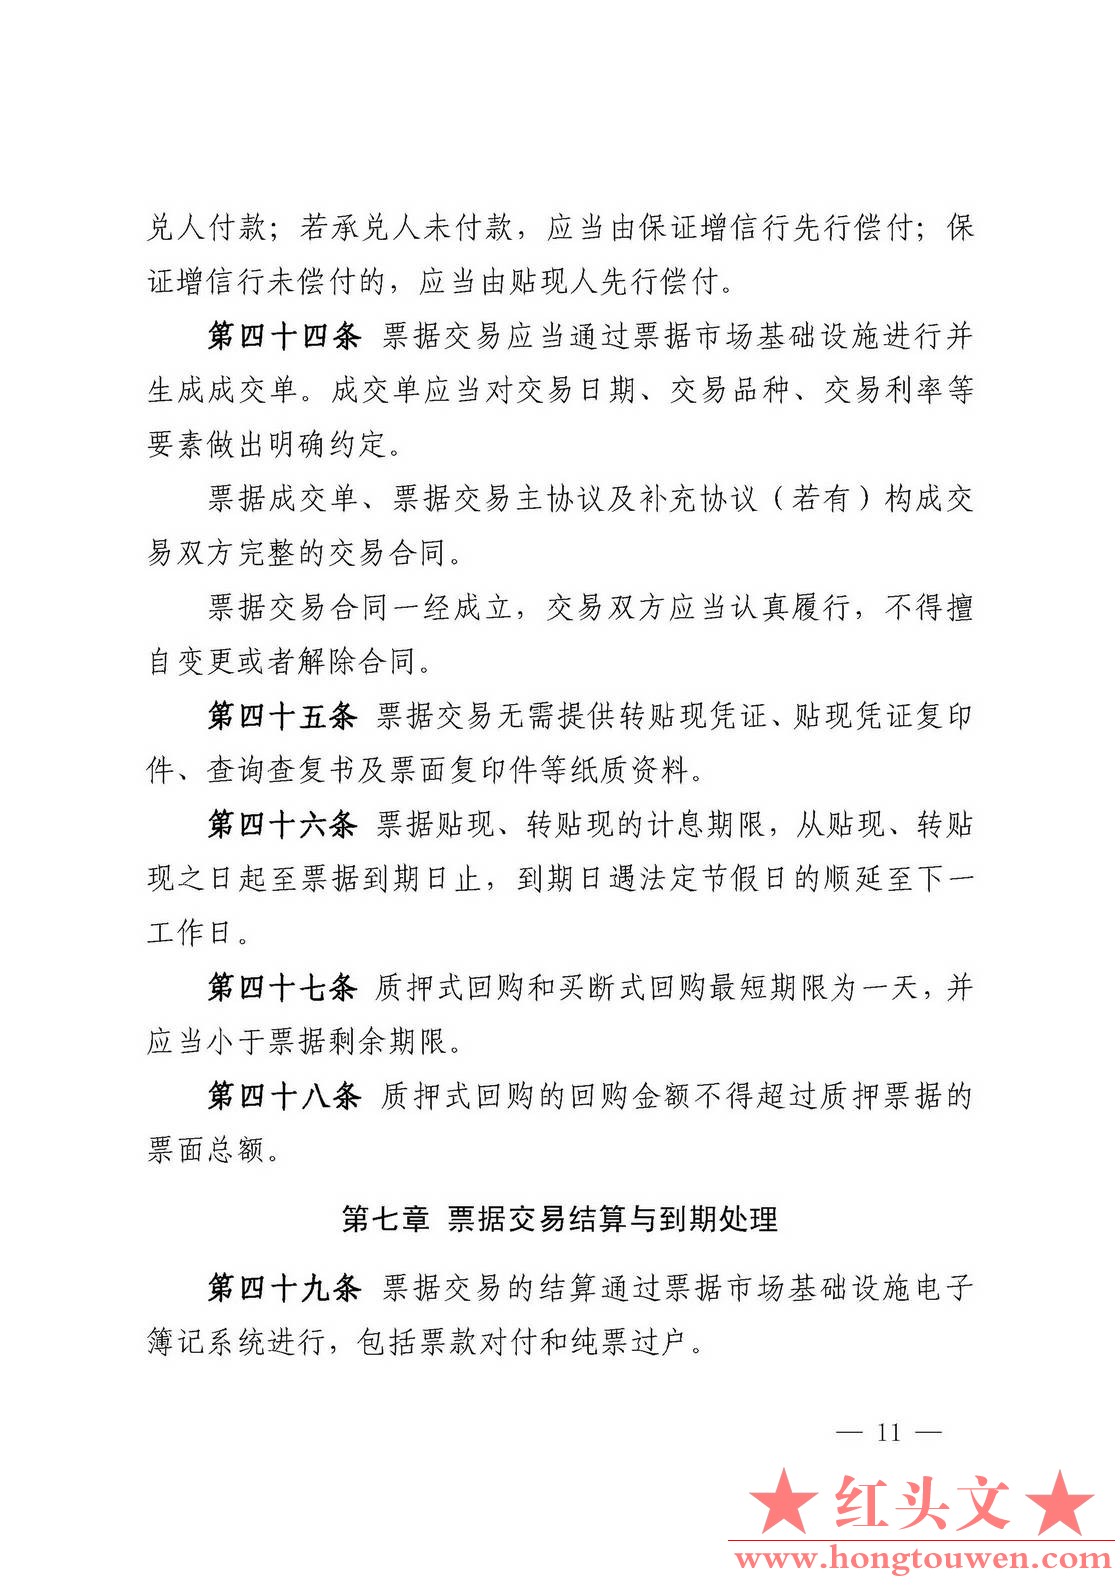 中国人民银行公告[2016]9号-票据交易管理办法_页面_11.jpg